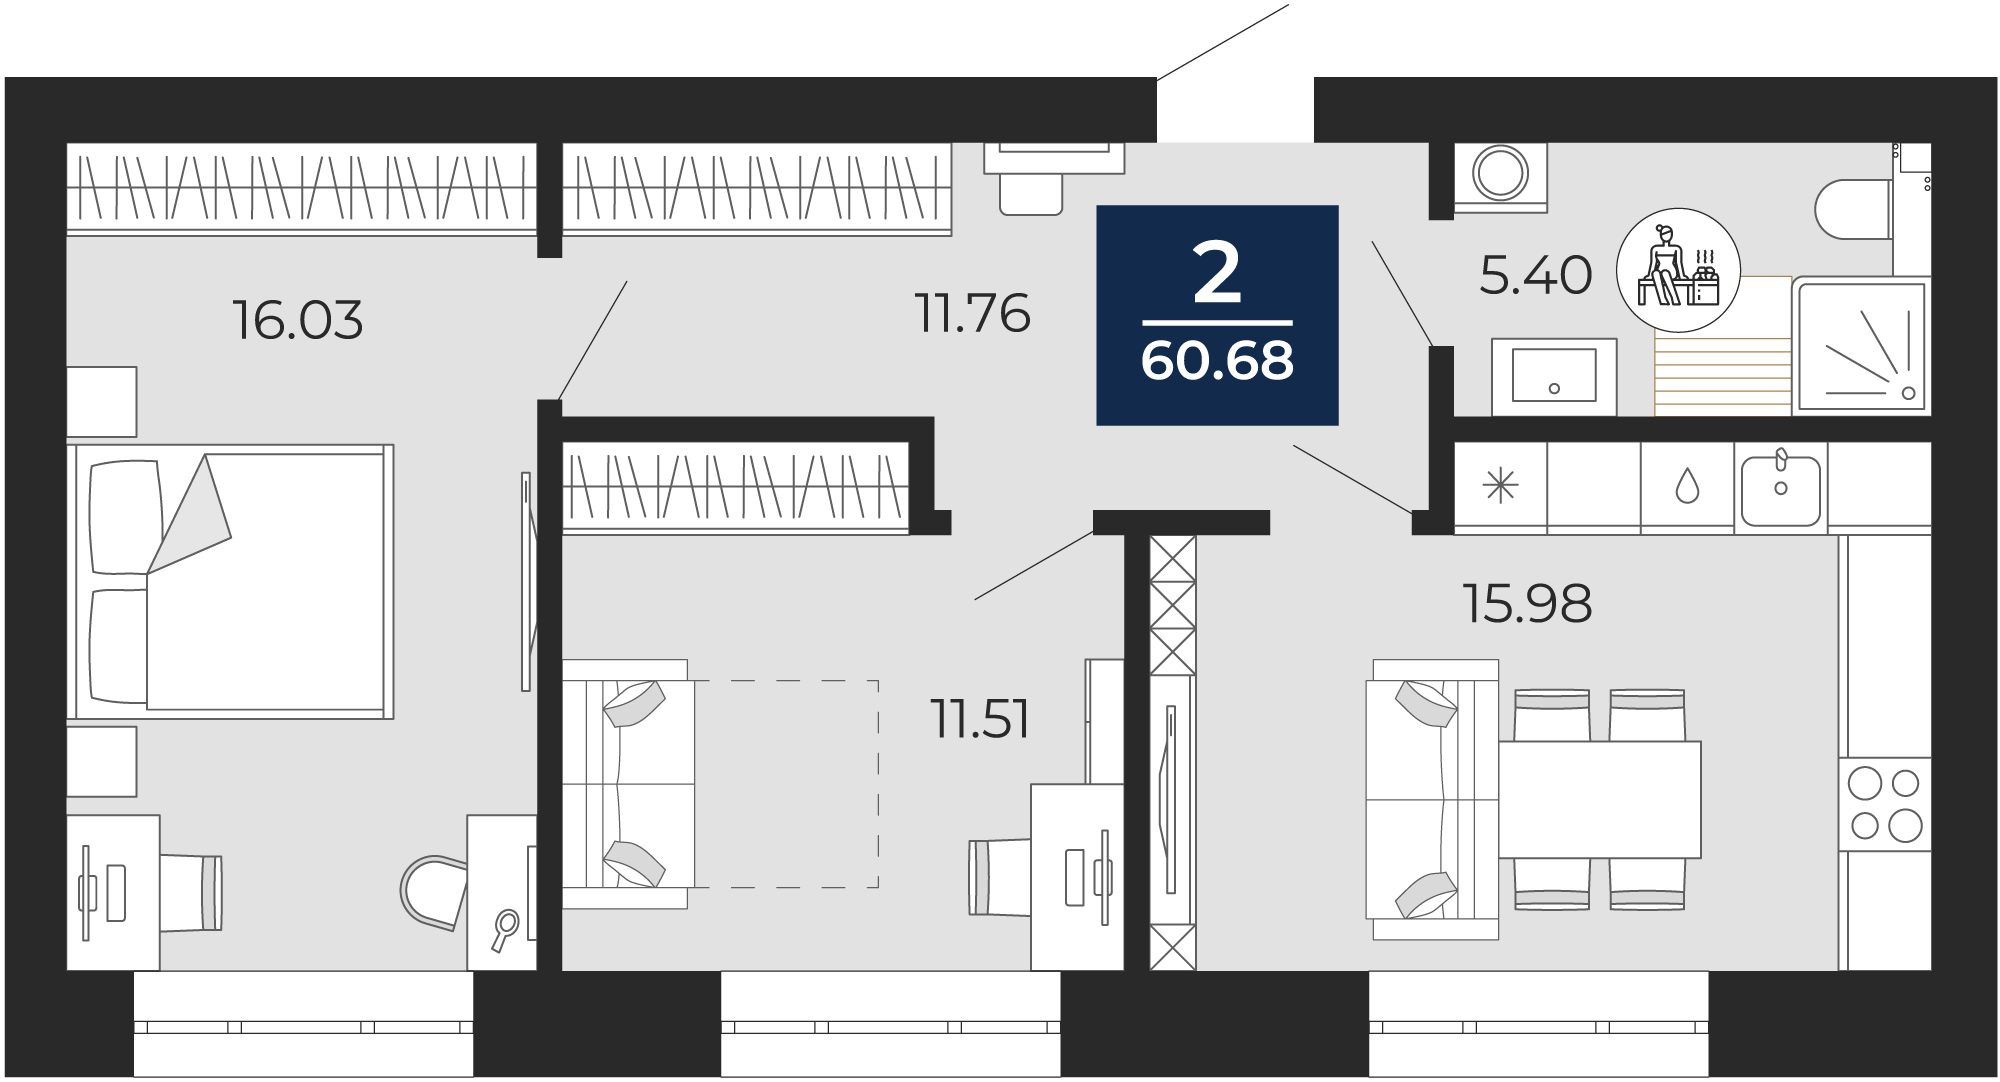 Квартира № 8, 2-комнатная, 60.68 кв. м, 3 этаж